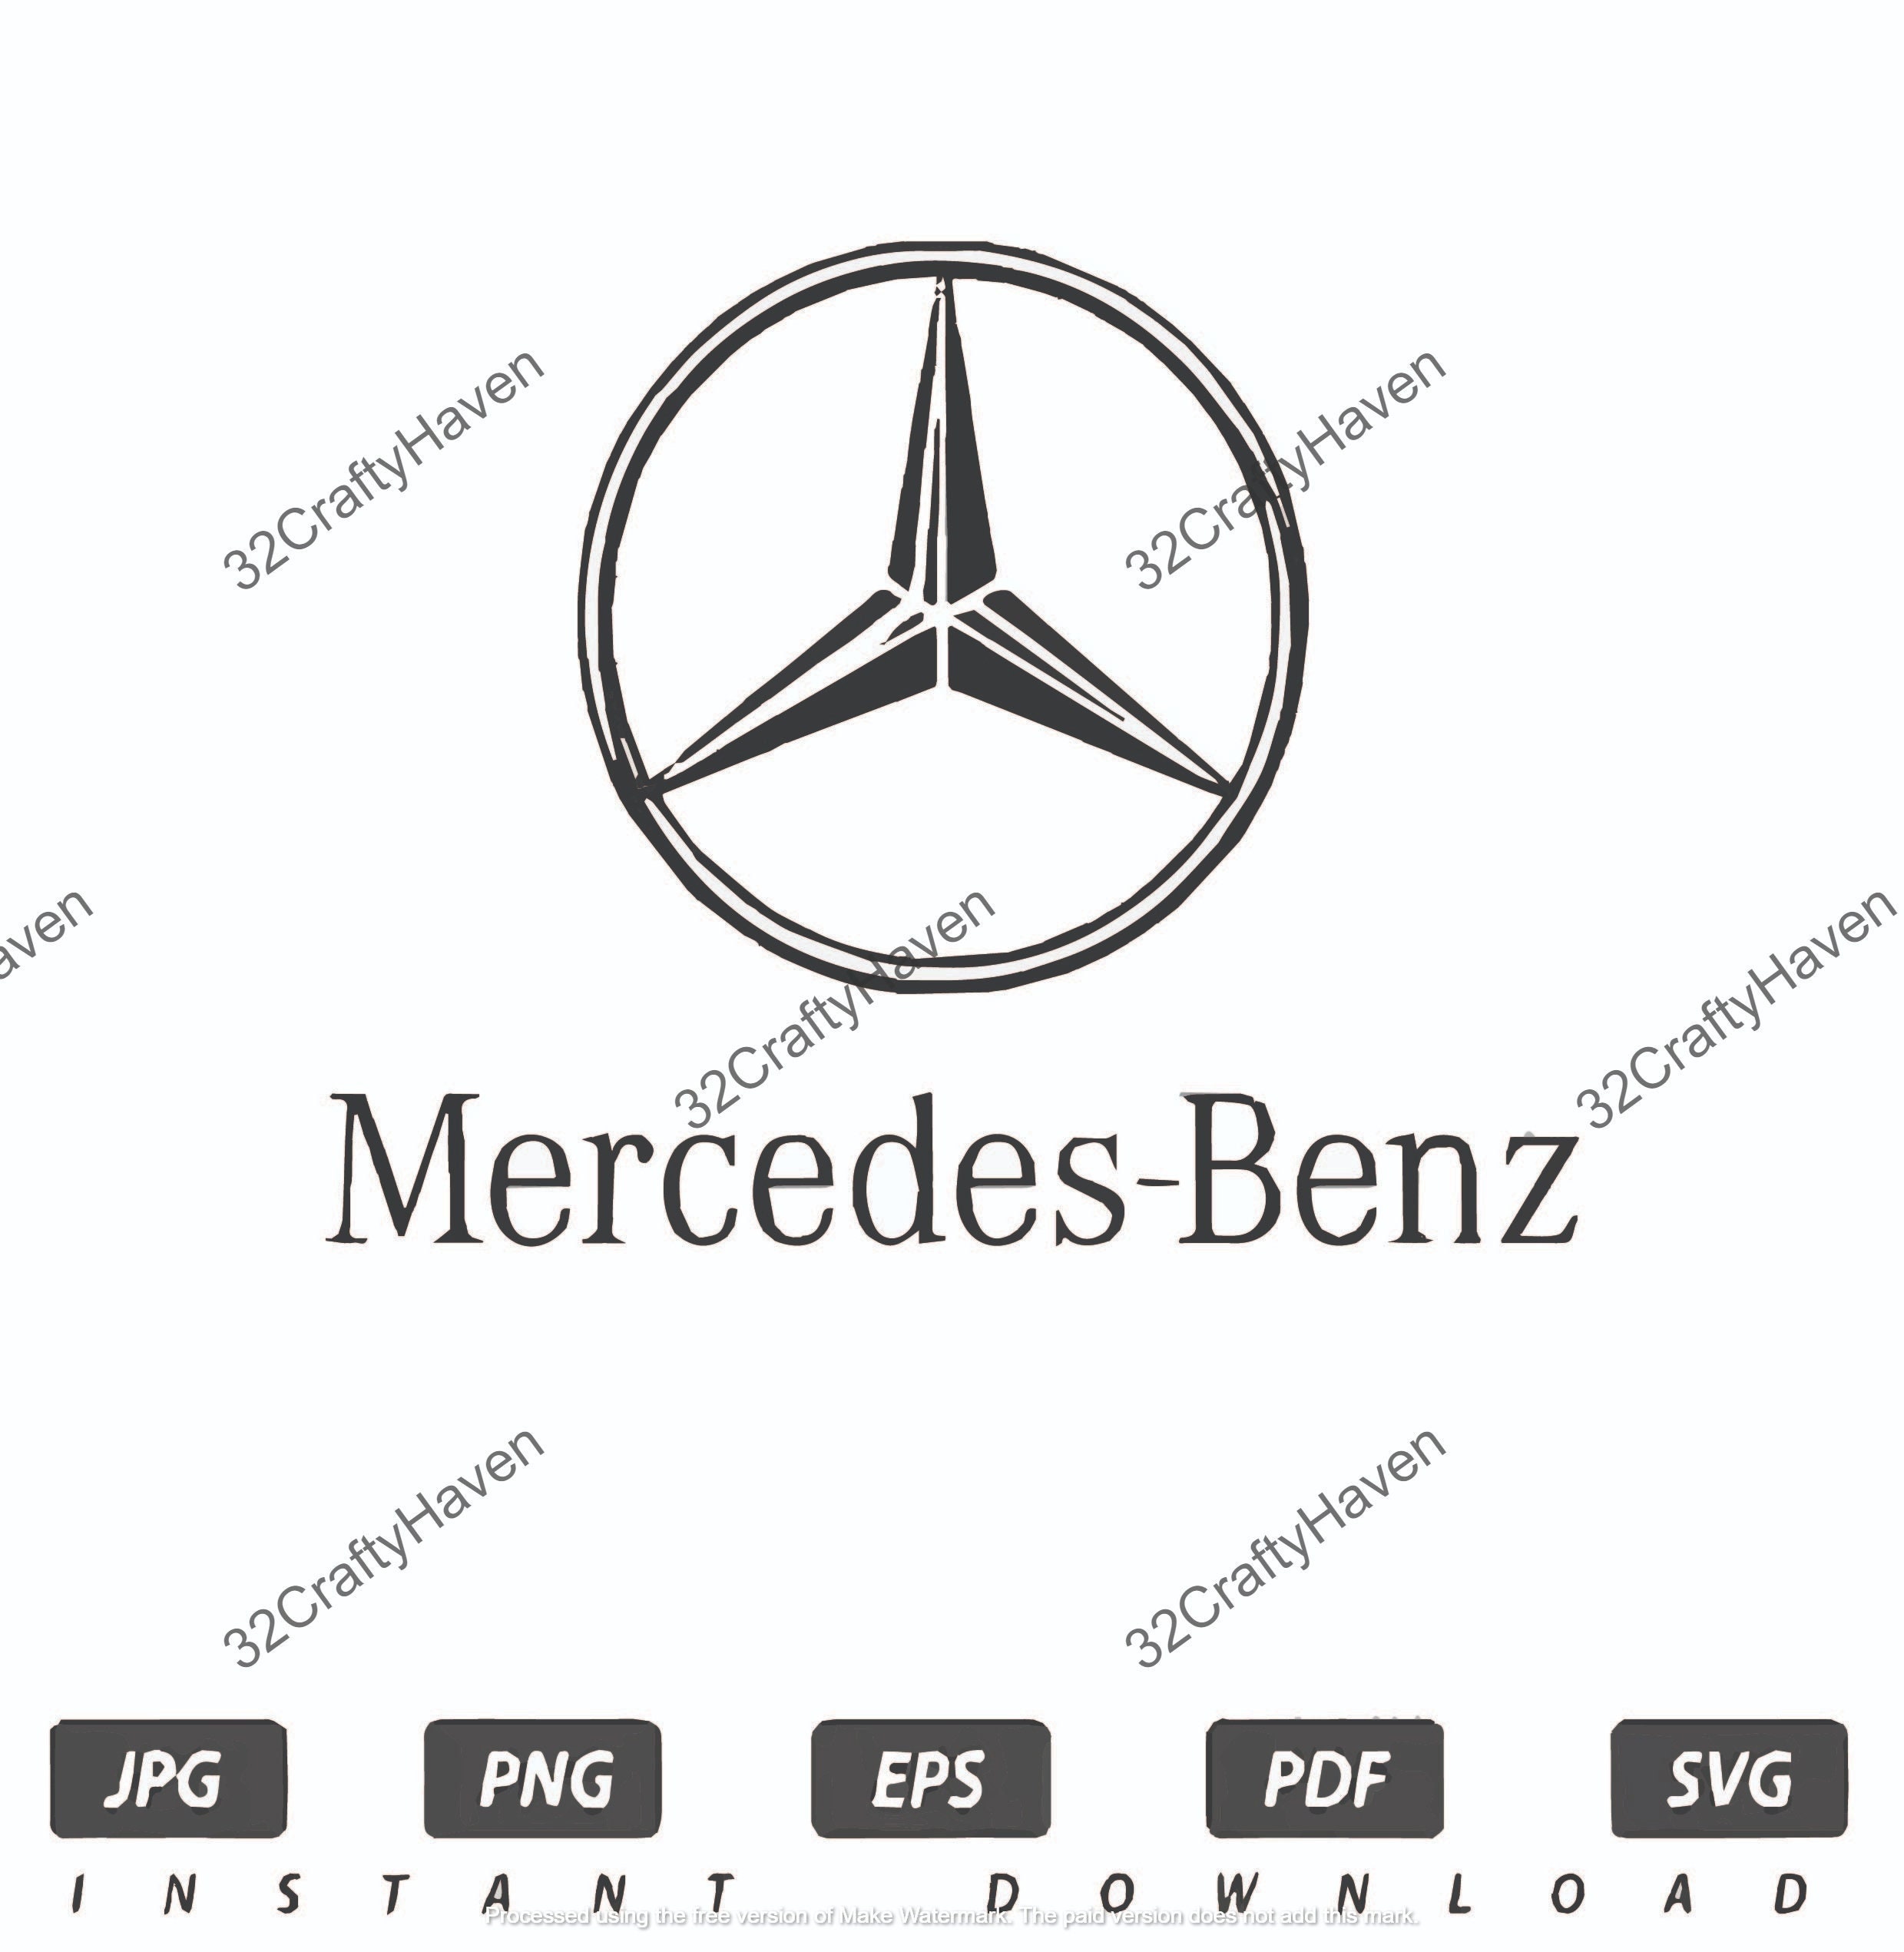 For Amg, Amg Logo, Digital, for Mercedes-benz, SVG, PNG, EPS, Dxf